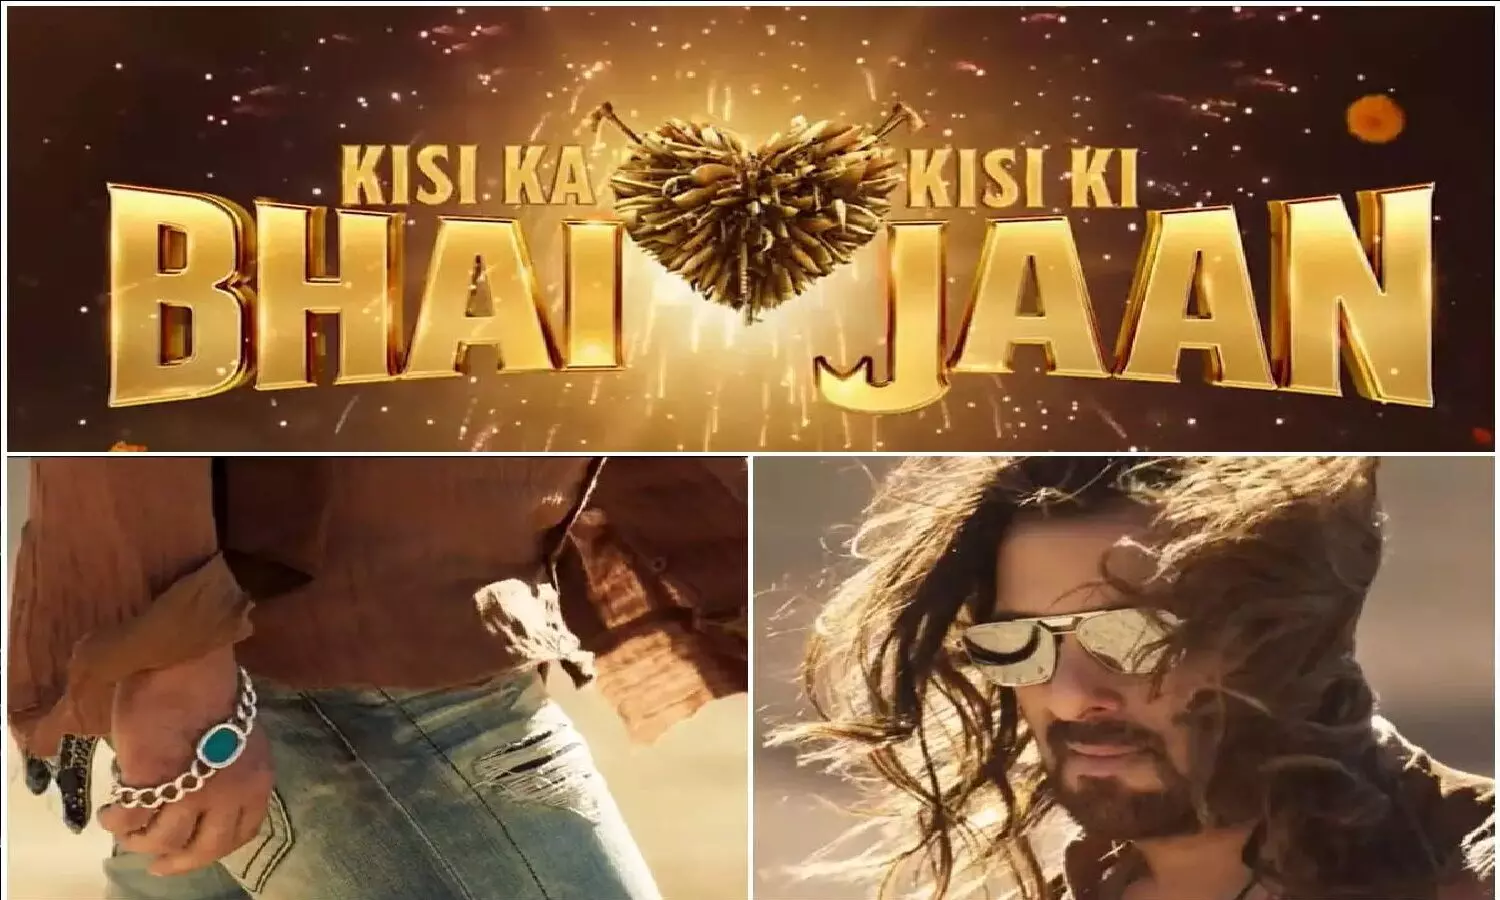 Kisi Ka Bhai Kisi Ki Jaan Teaser Review: सलमान खान की नई फिल्म किसी का भाई किसी की जान का टीजर देख लो